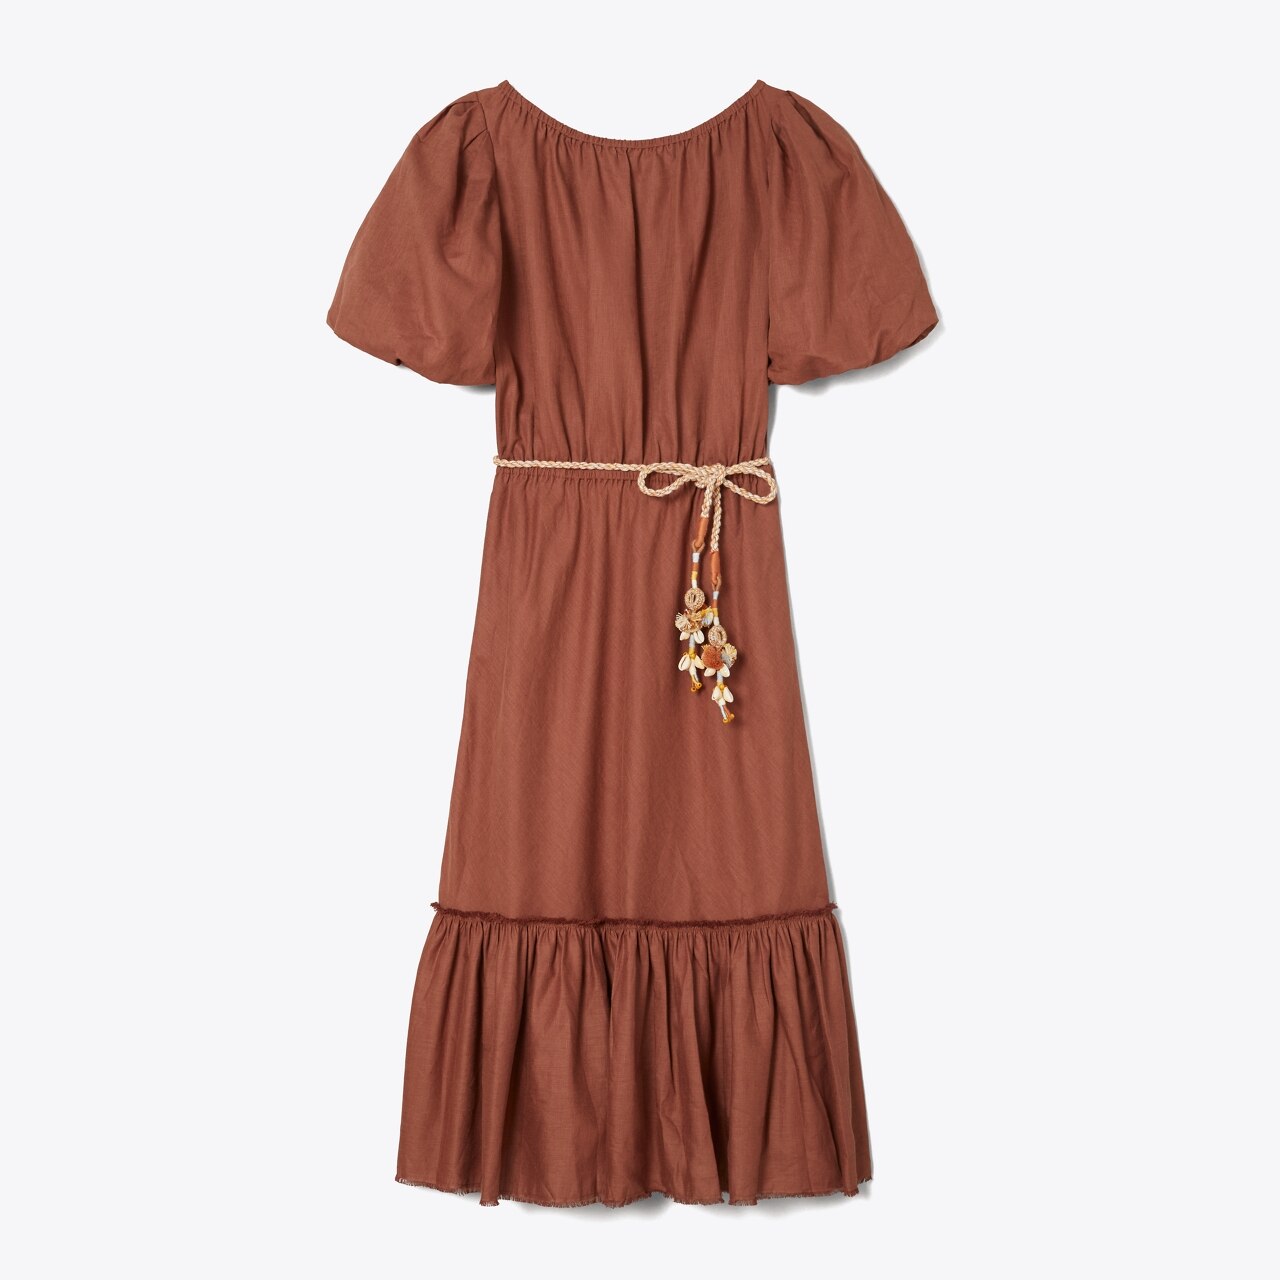 TORY BURCH: Dress women - Cream  TORY BURCH dress 87518 online at